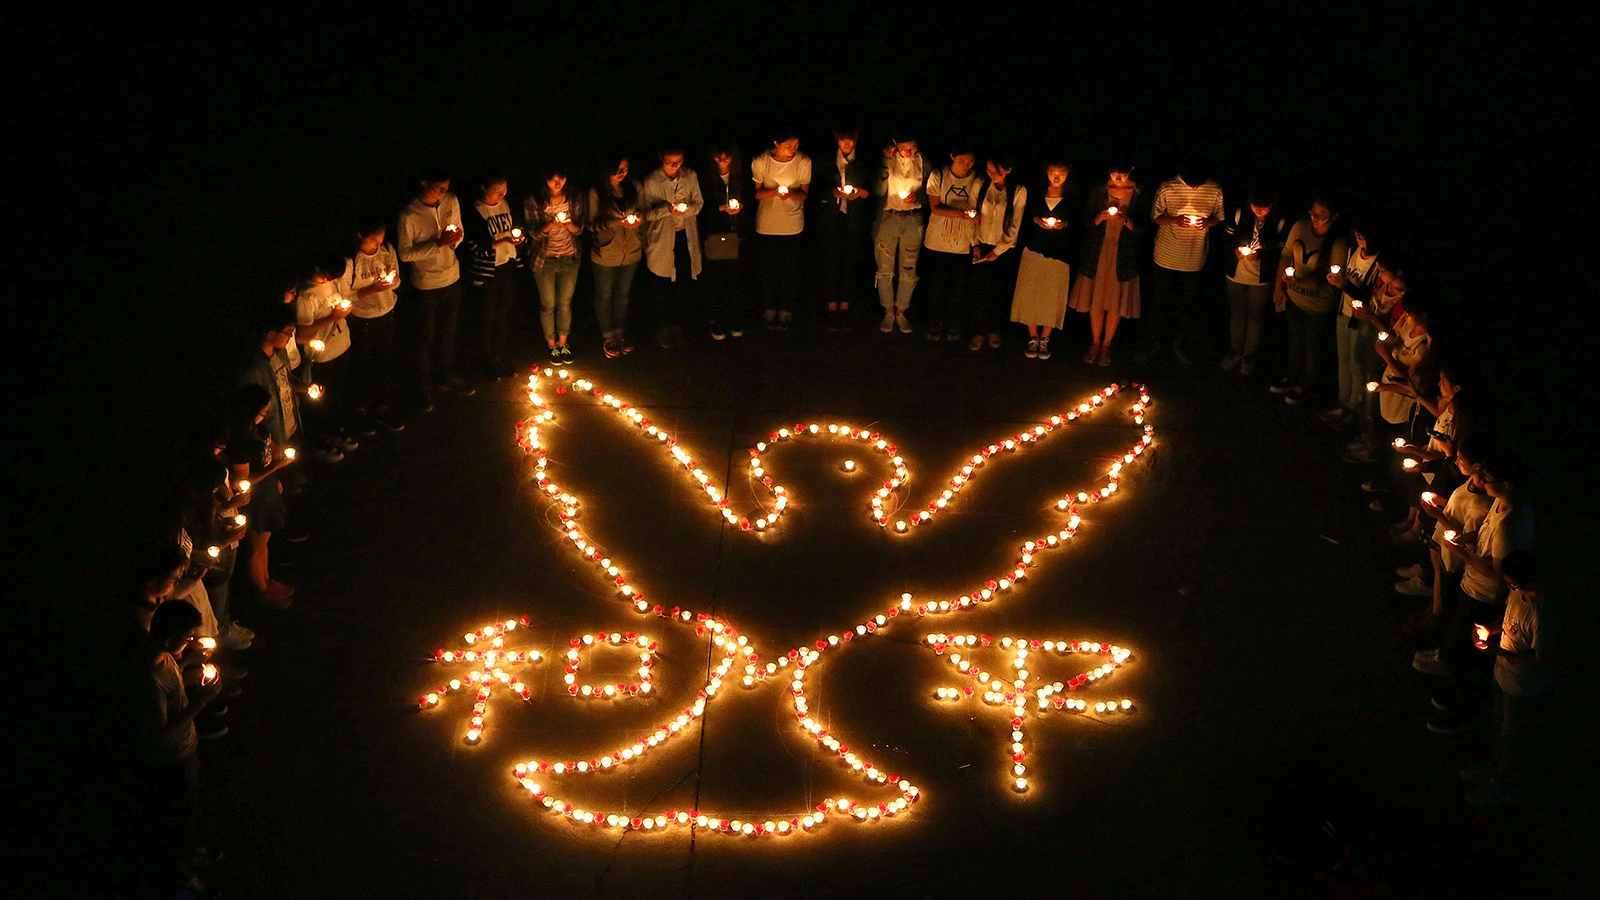 <p>На фото: инсталляция, выложенная студентами в День мира, Вашингтон, США, 1 мая 2012 года</p>